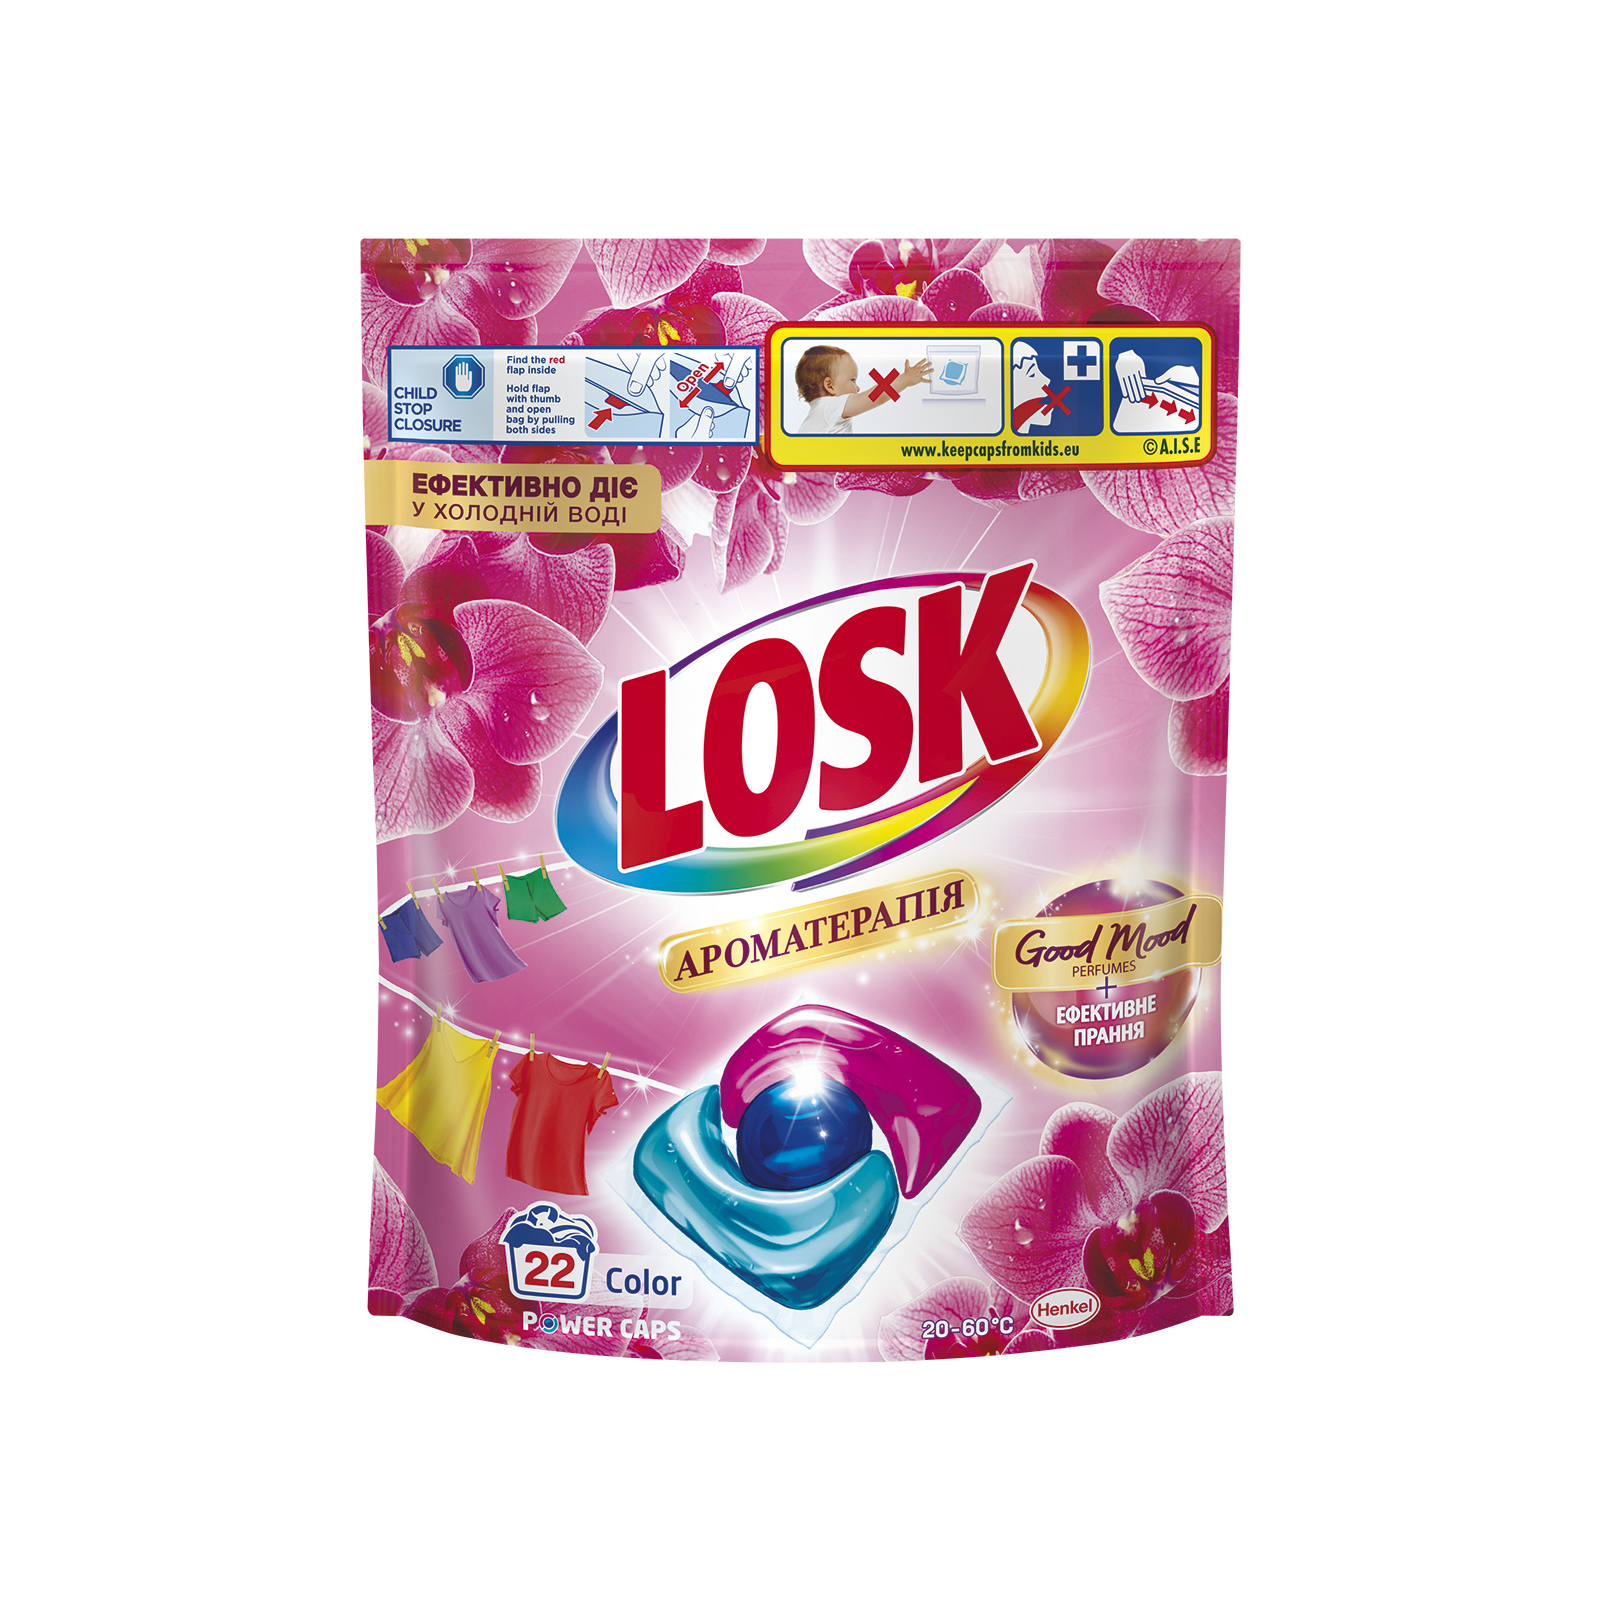 Капсулы для стирки Losk Power Caps Color Ароматерапия Эфирные масла и аромат Малазийского цветка 22 шт. (9000101802467)